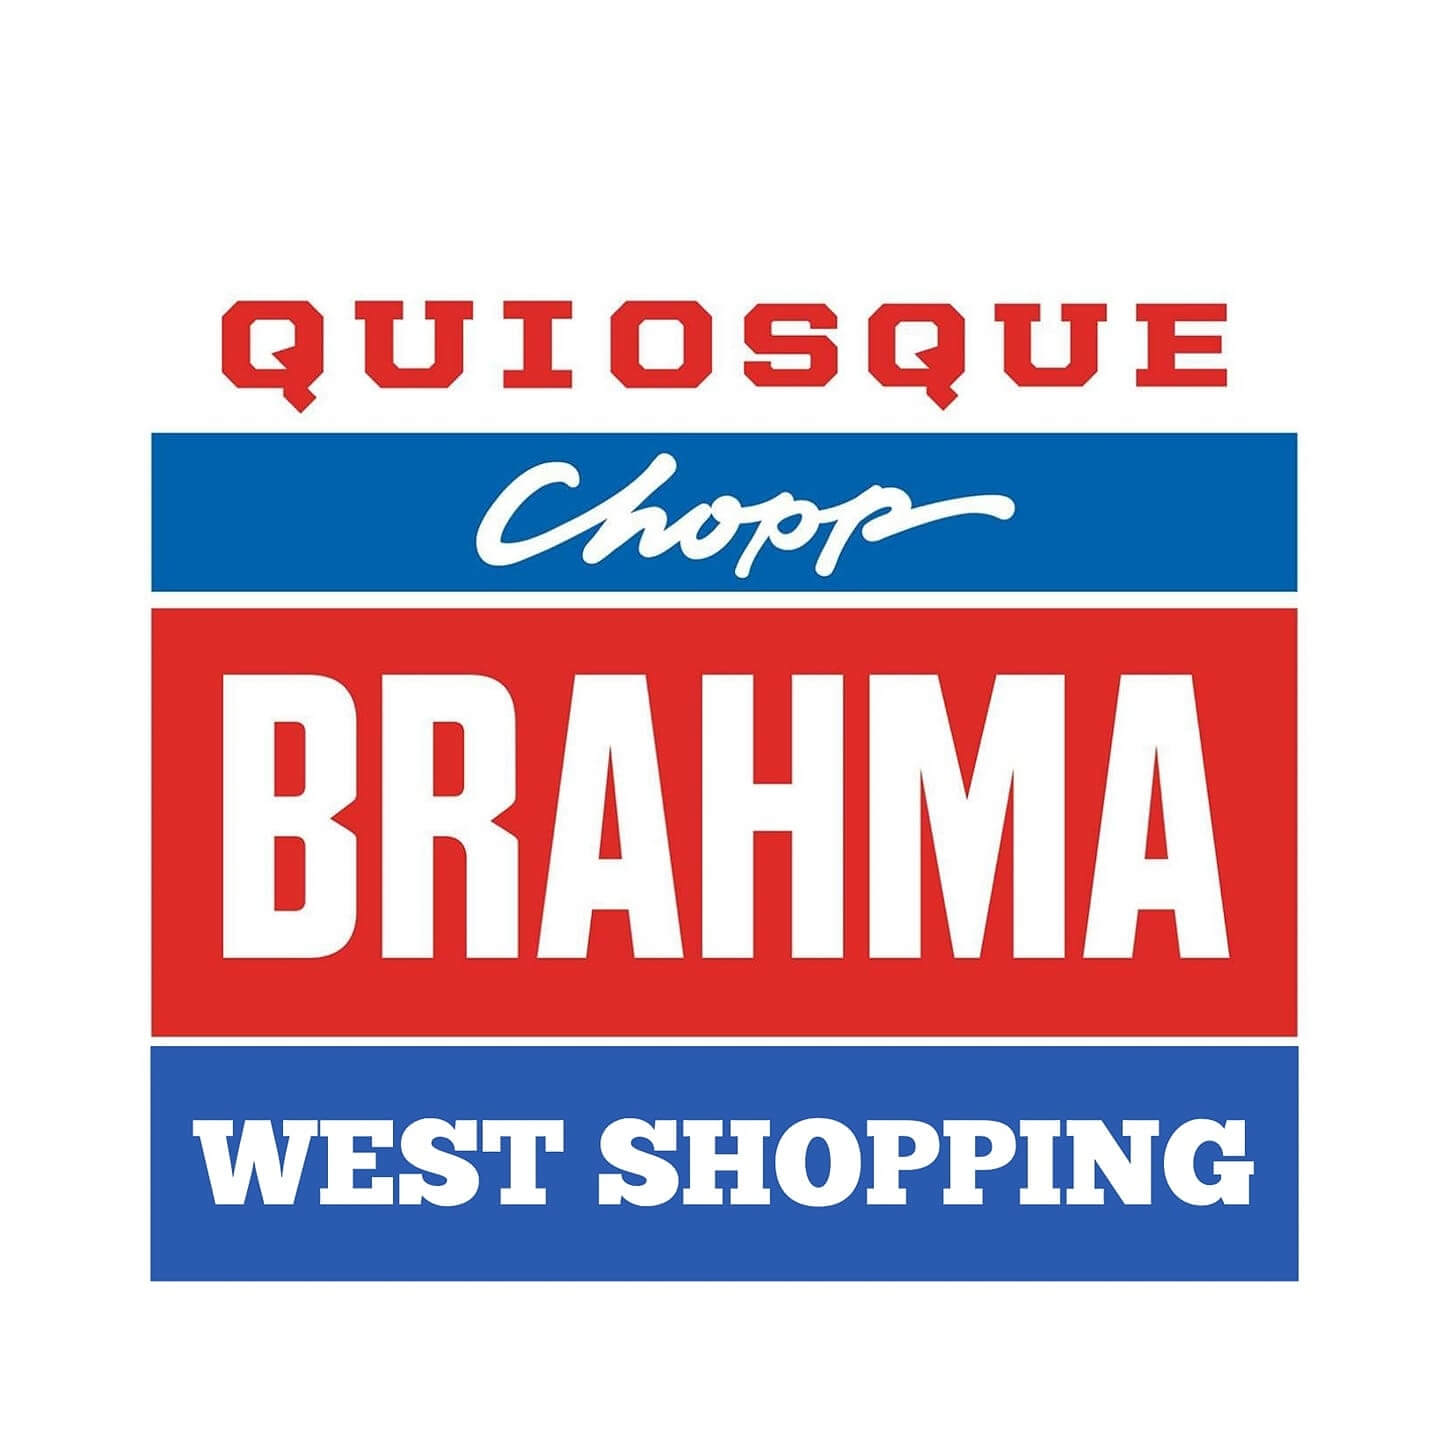 Quiosque chopp Brahma